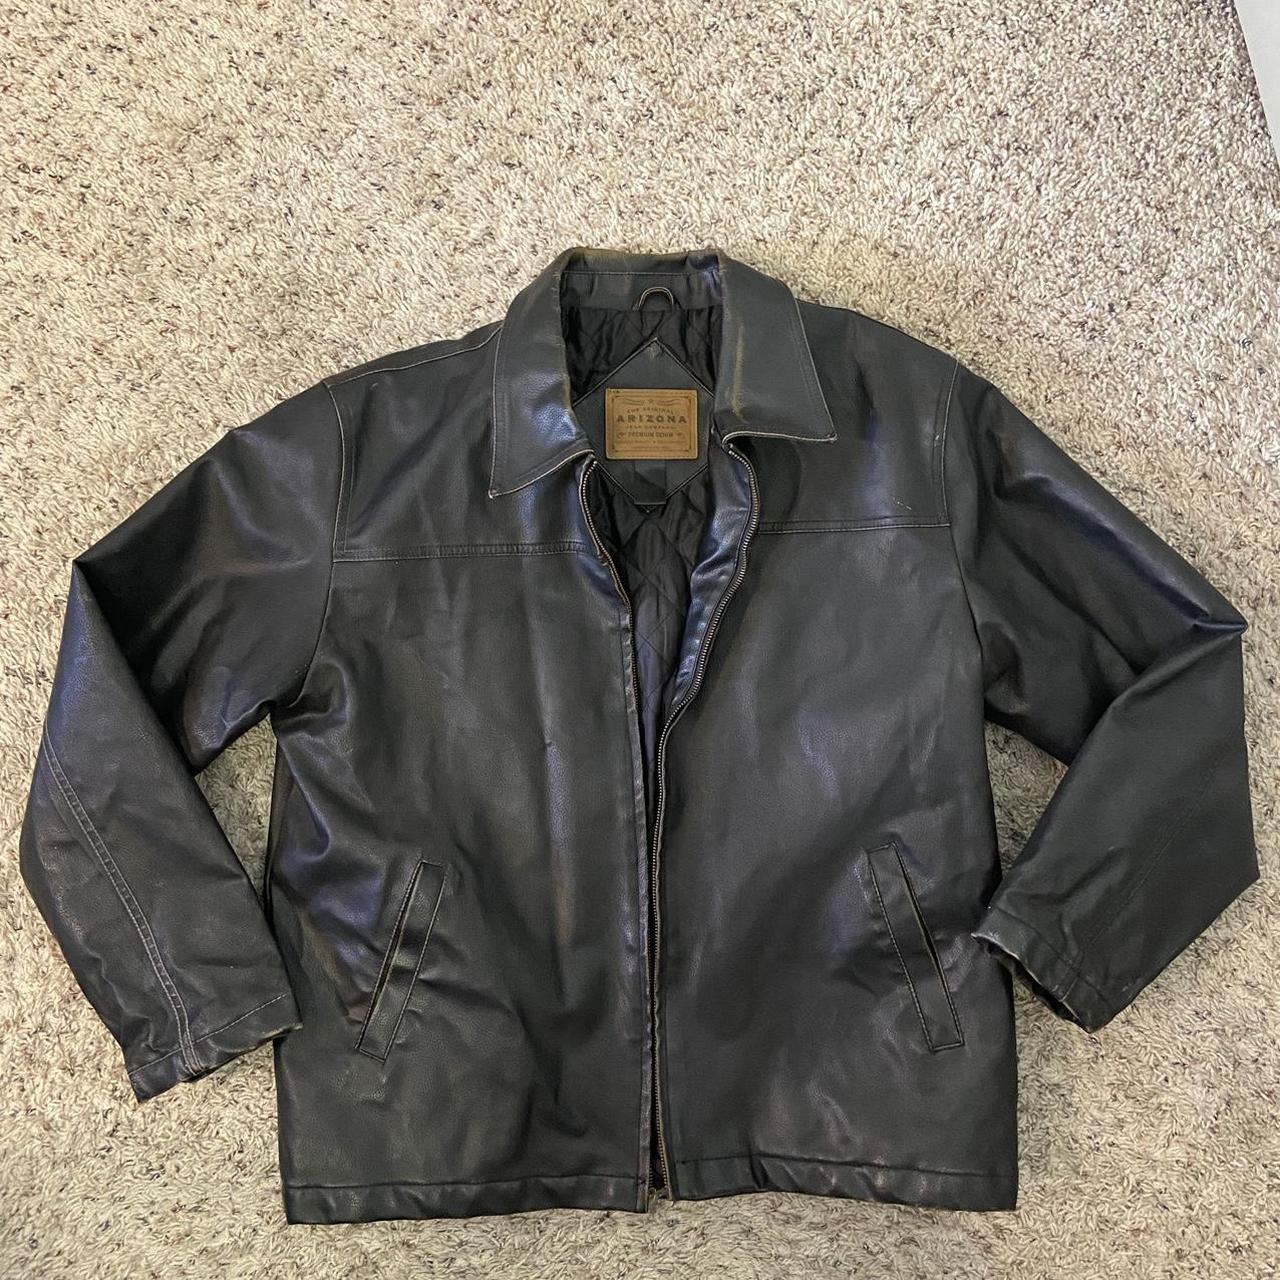 Black leather jacket w/ natural... - Depop